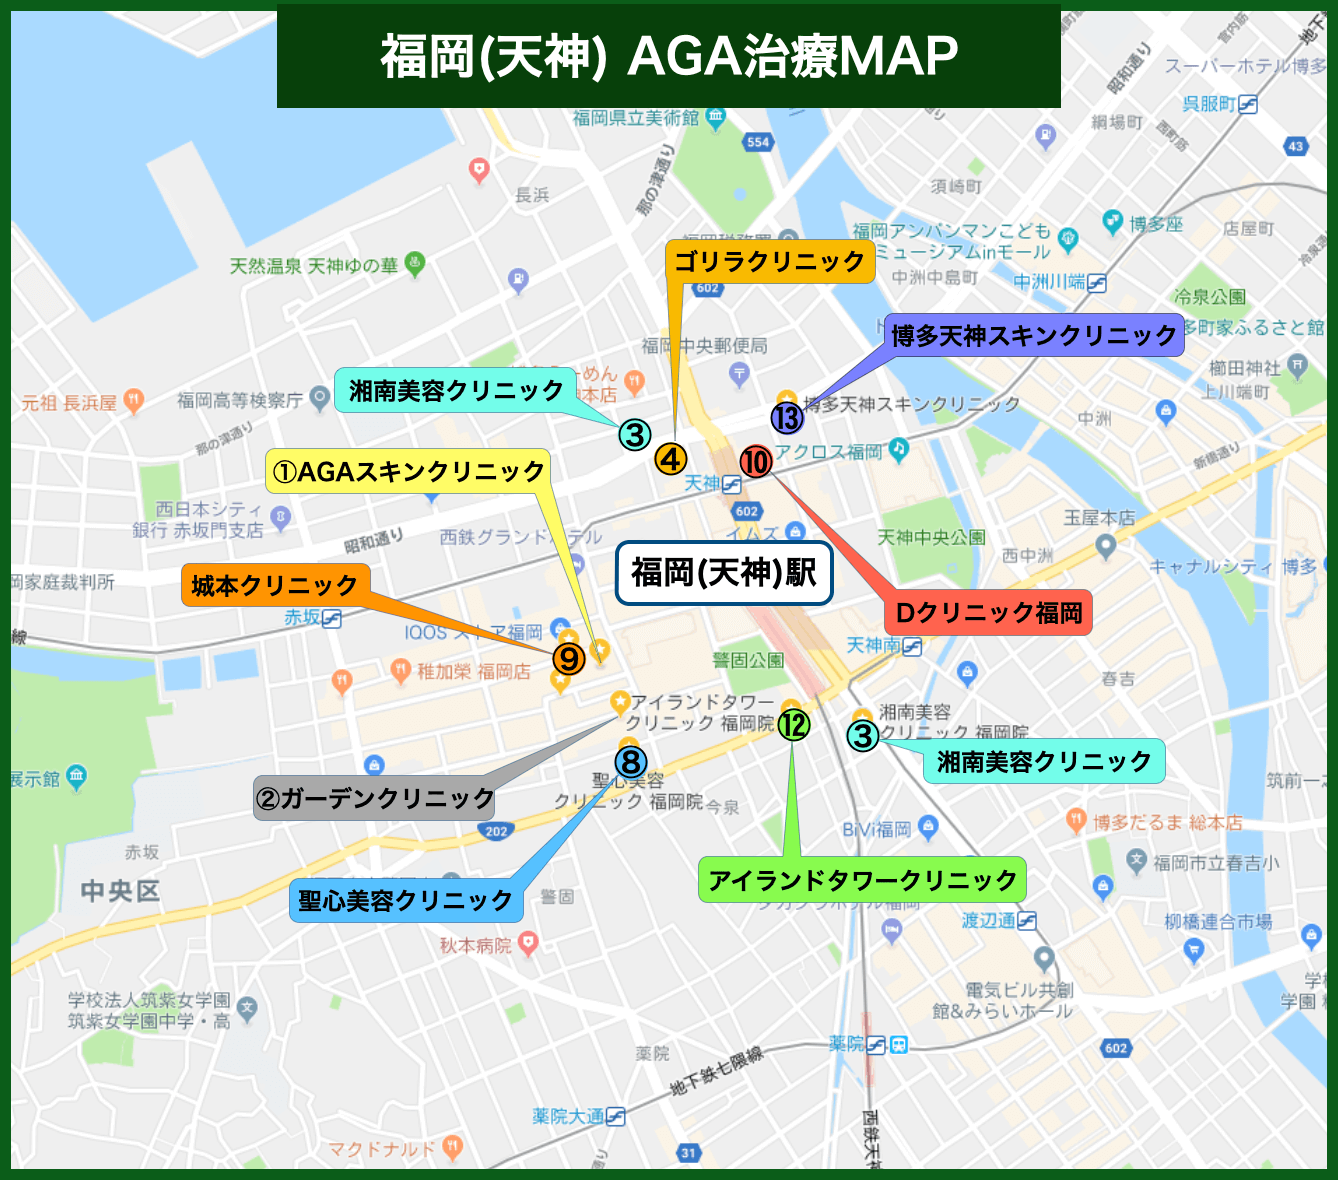 福岡(天神) AGA治療MAP